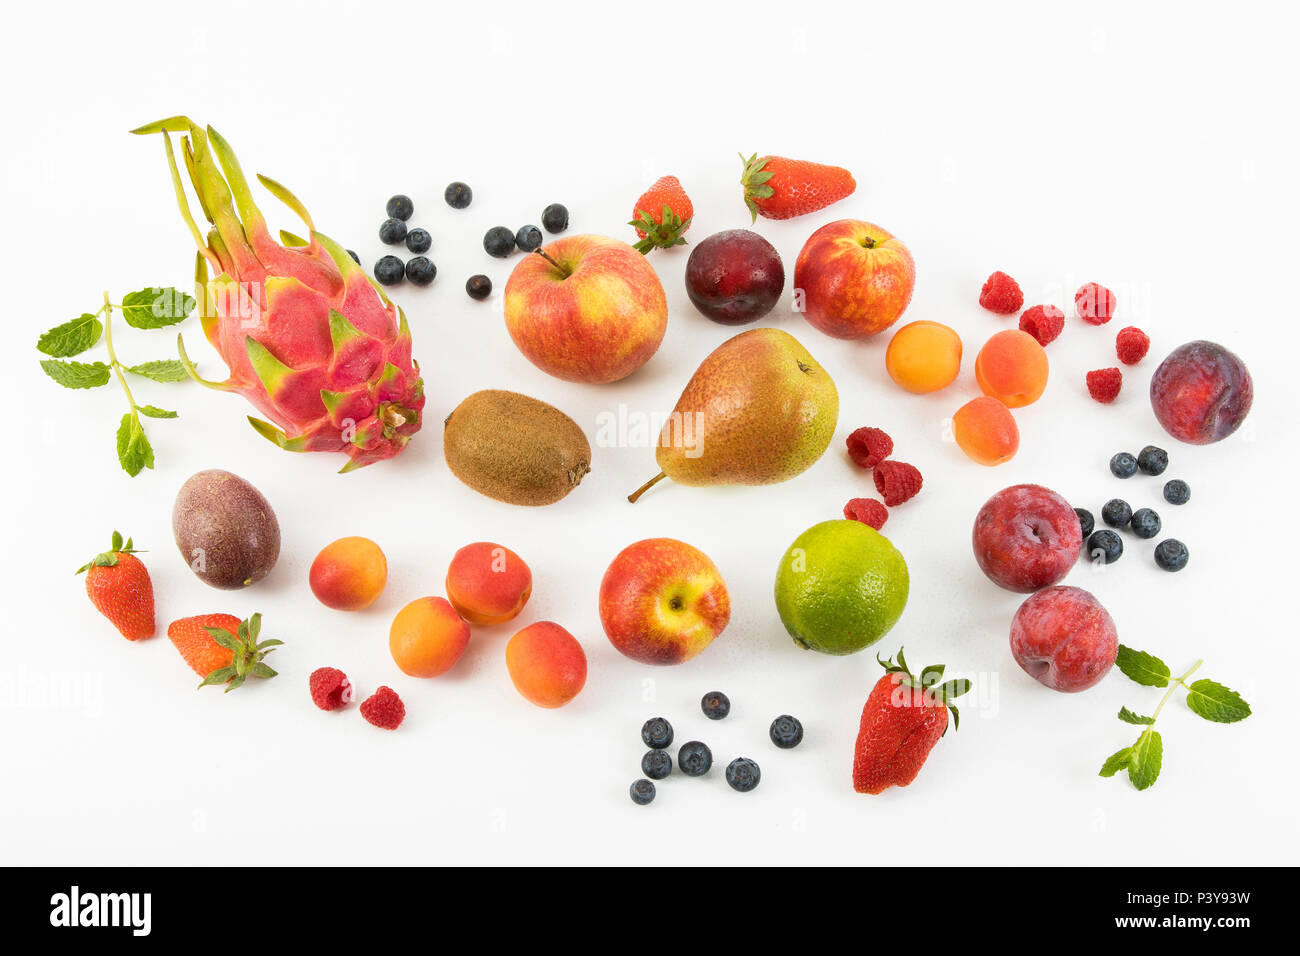 Obst, Früchte-Mix, Erdbeeren, Himbeeren, Blaubeeren, Äpfel, Birnen, Limette, Kiwi, Pflaumen, Aprikosen, Drachenfrucht und Minze Stock Photo